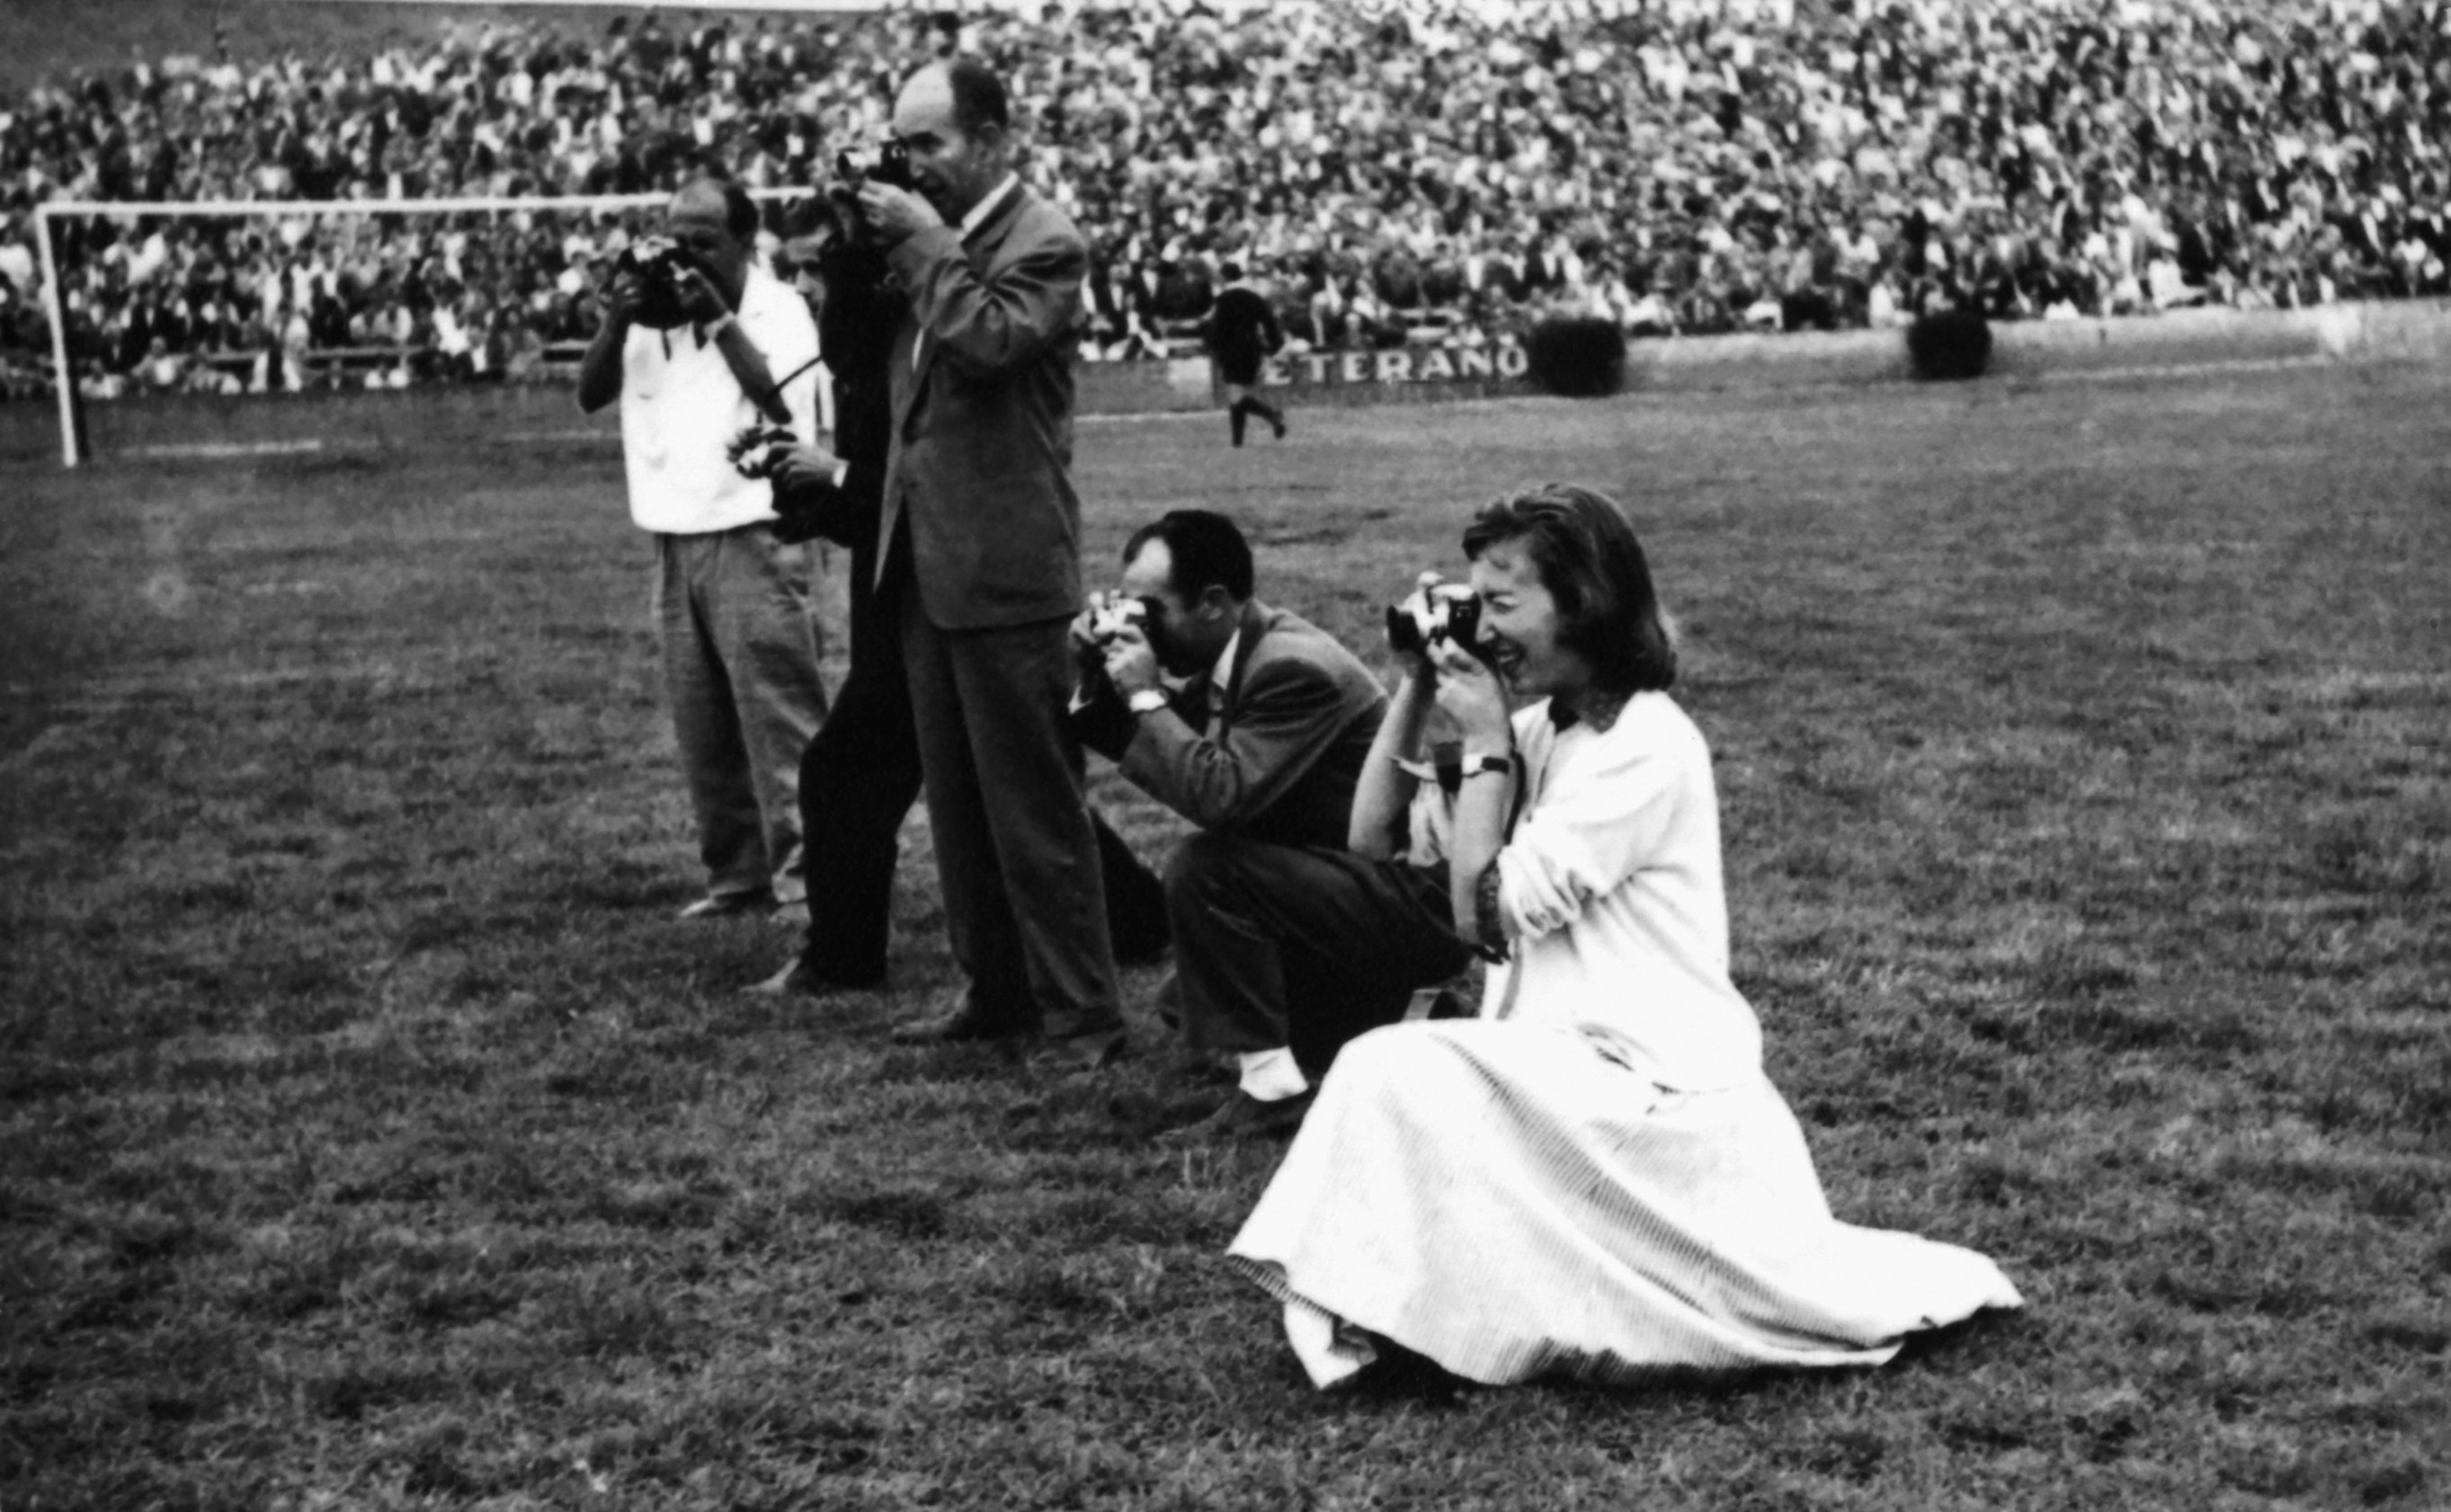 La fotoperiodista junto a su padre en un partido de fútbol en la década de los 50